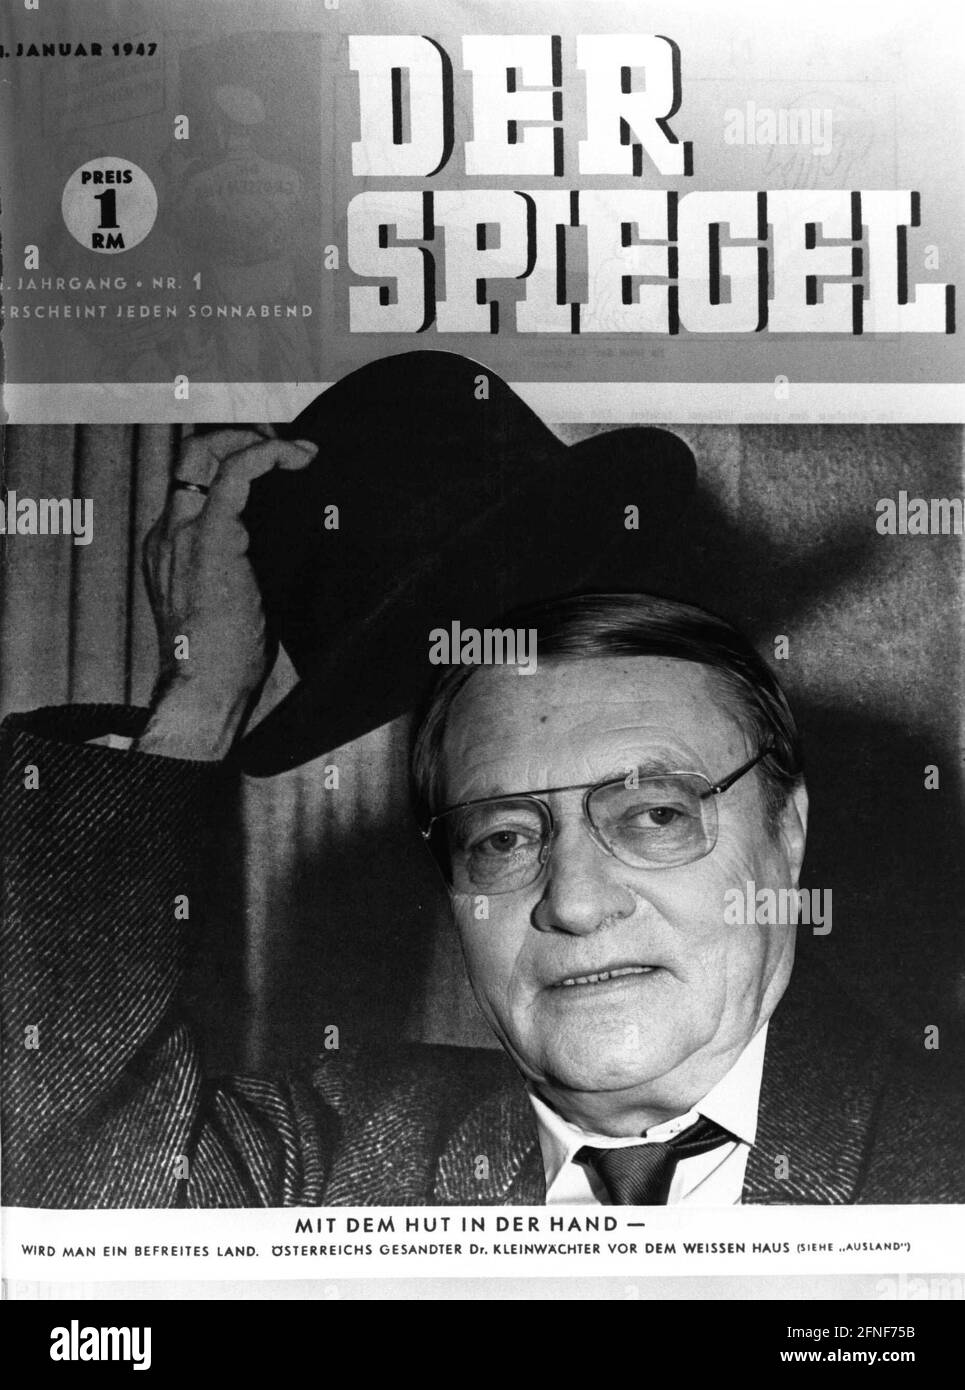 'El editor de la revista de noticias de Hamburgo ''Der Spiegel'', Rudolf Augstein, murió el 7 de noviembre de 2002 a la edad de 79 años como consecuencia de la neumonía. Nuestro fotomontaje muestra a Rudolf Augstein frente a la primera edición de ''Spiegel'' el 4 de enero de 1947. [traducción automática]' Foto de stock